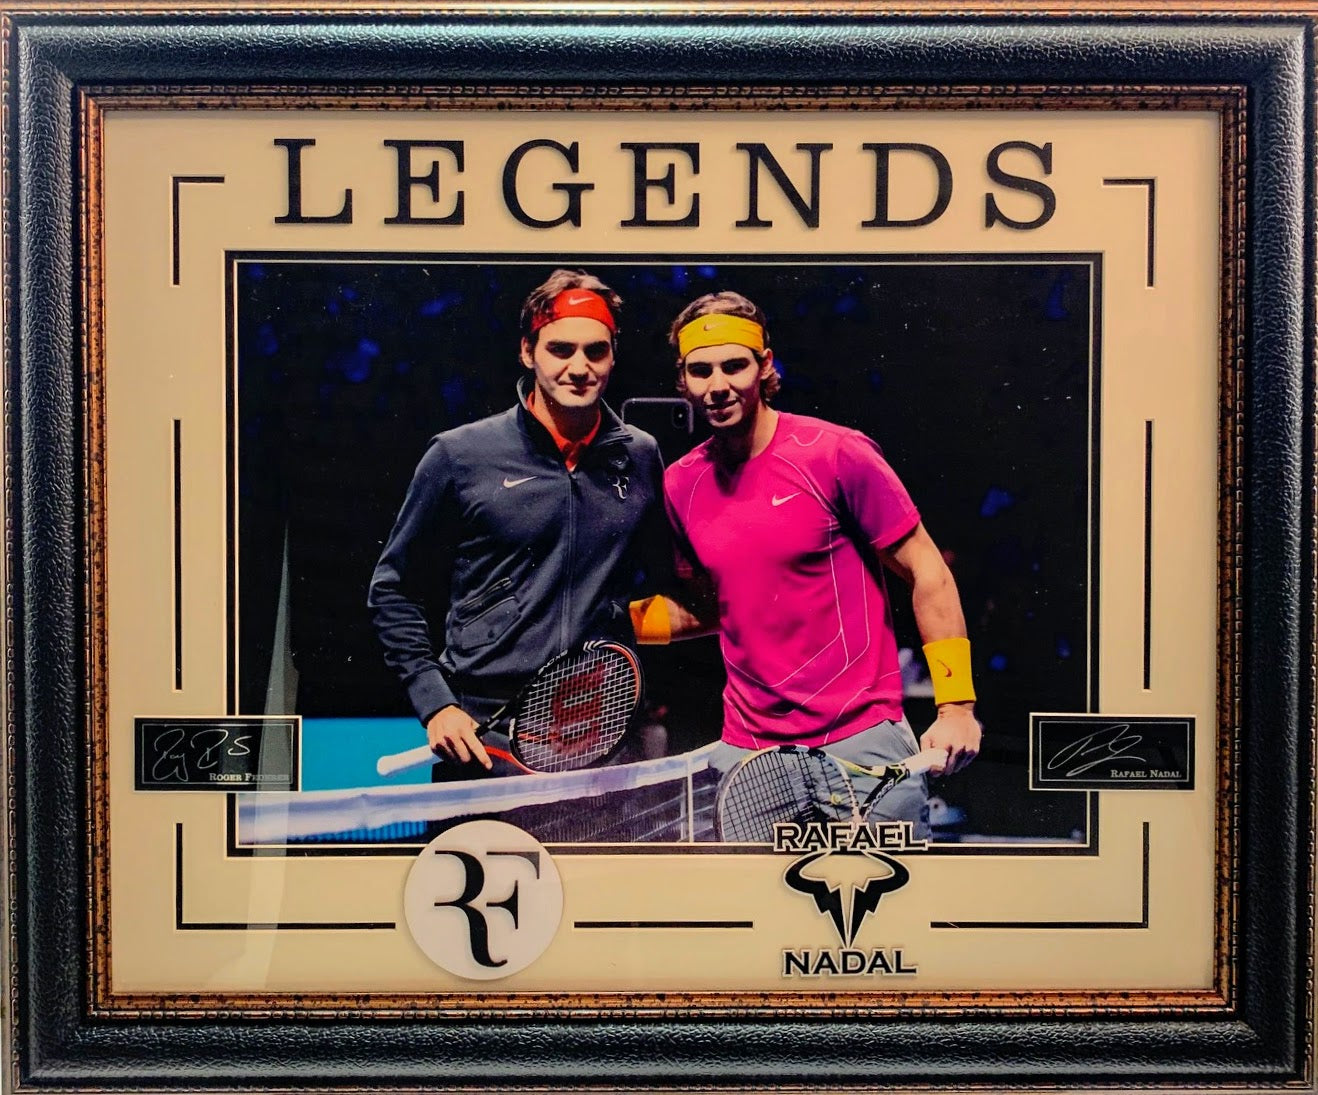 Legends Roger Federer & Rafael Nadal Framed Photo with Laser Engraved Signatures